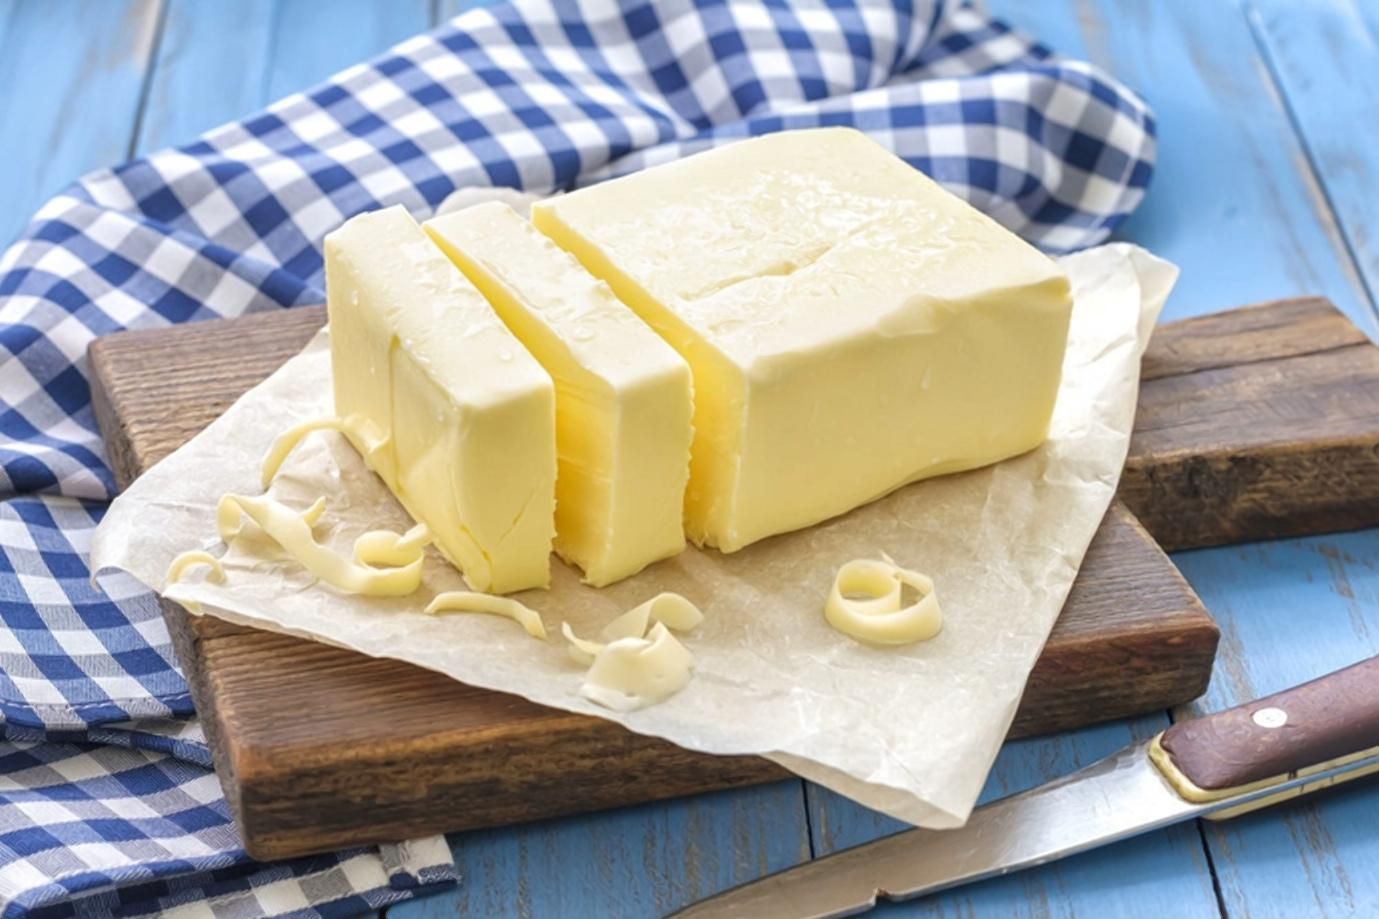 Фальсификат масла и сыра в школах: каких производителей поймали на подделке - Агро